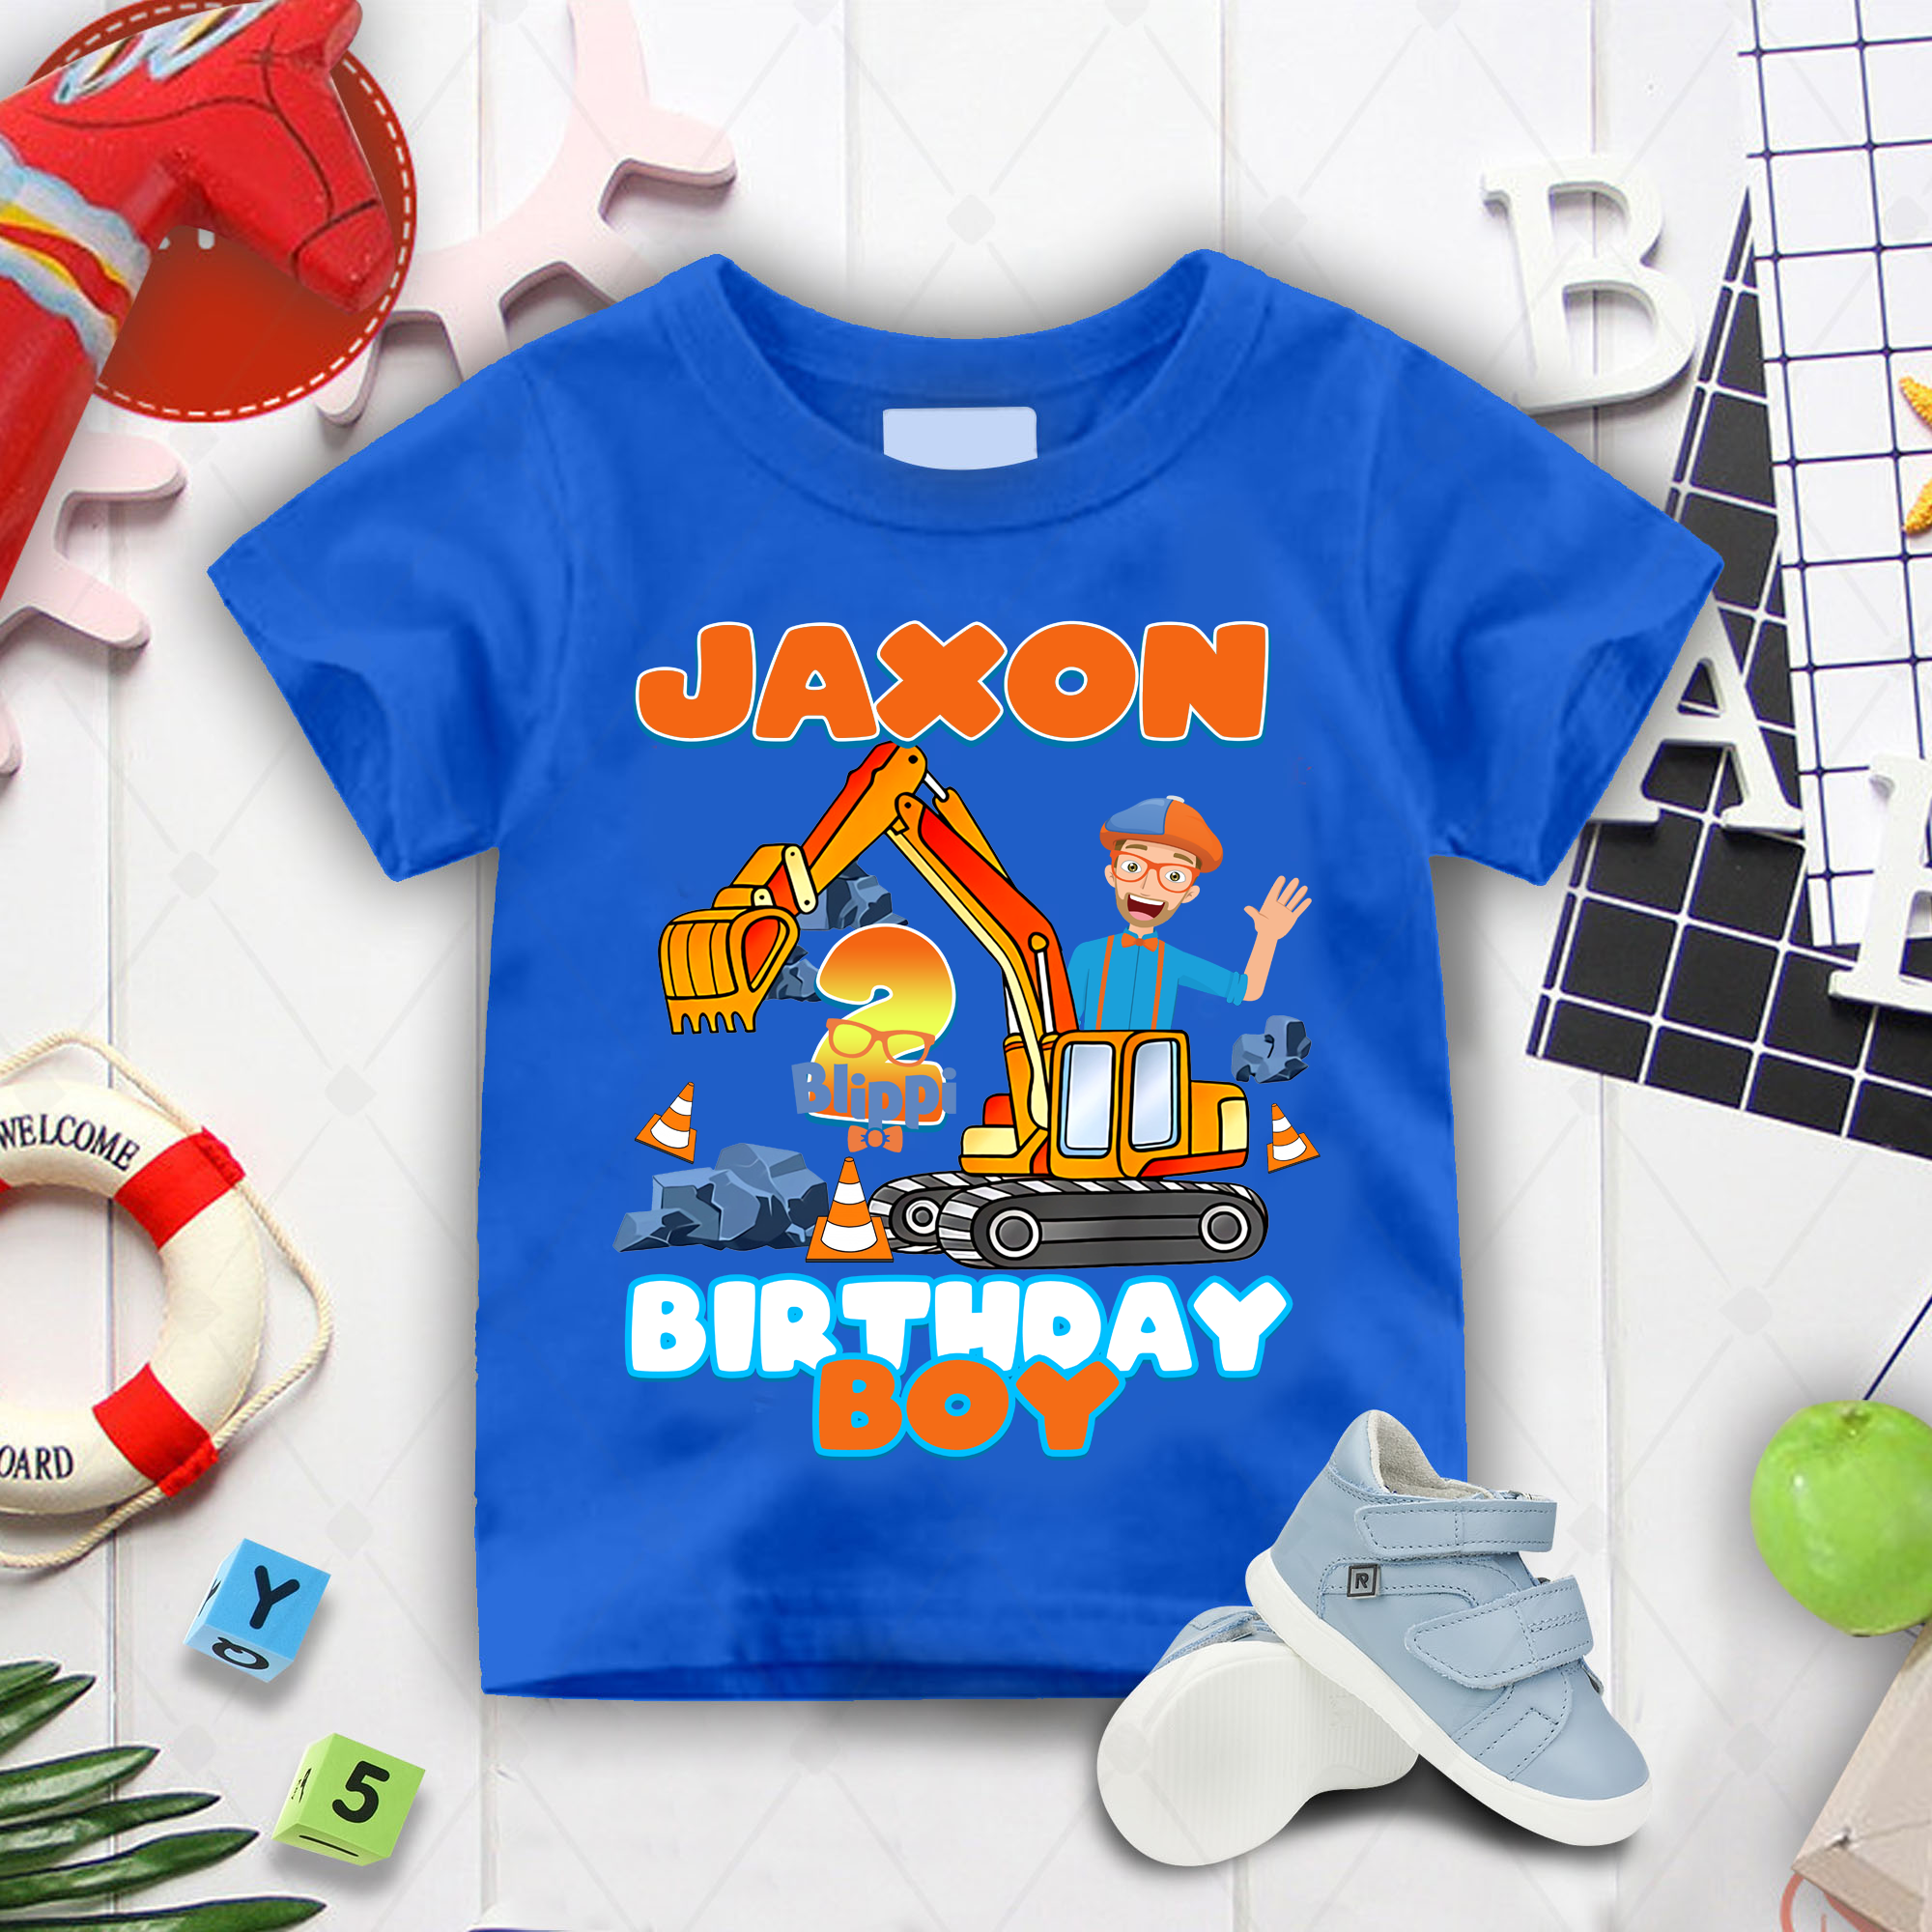 Blippi Birthday Boy Shirts, Blippi Excavator Shirt, Blippi Theme Party, Custom Name And Age